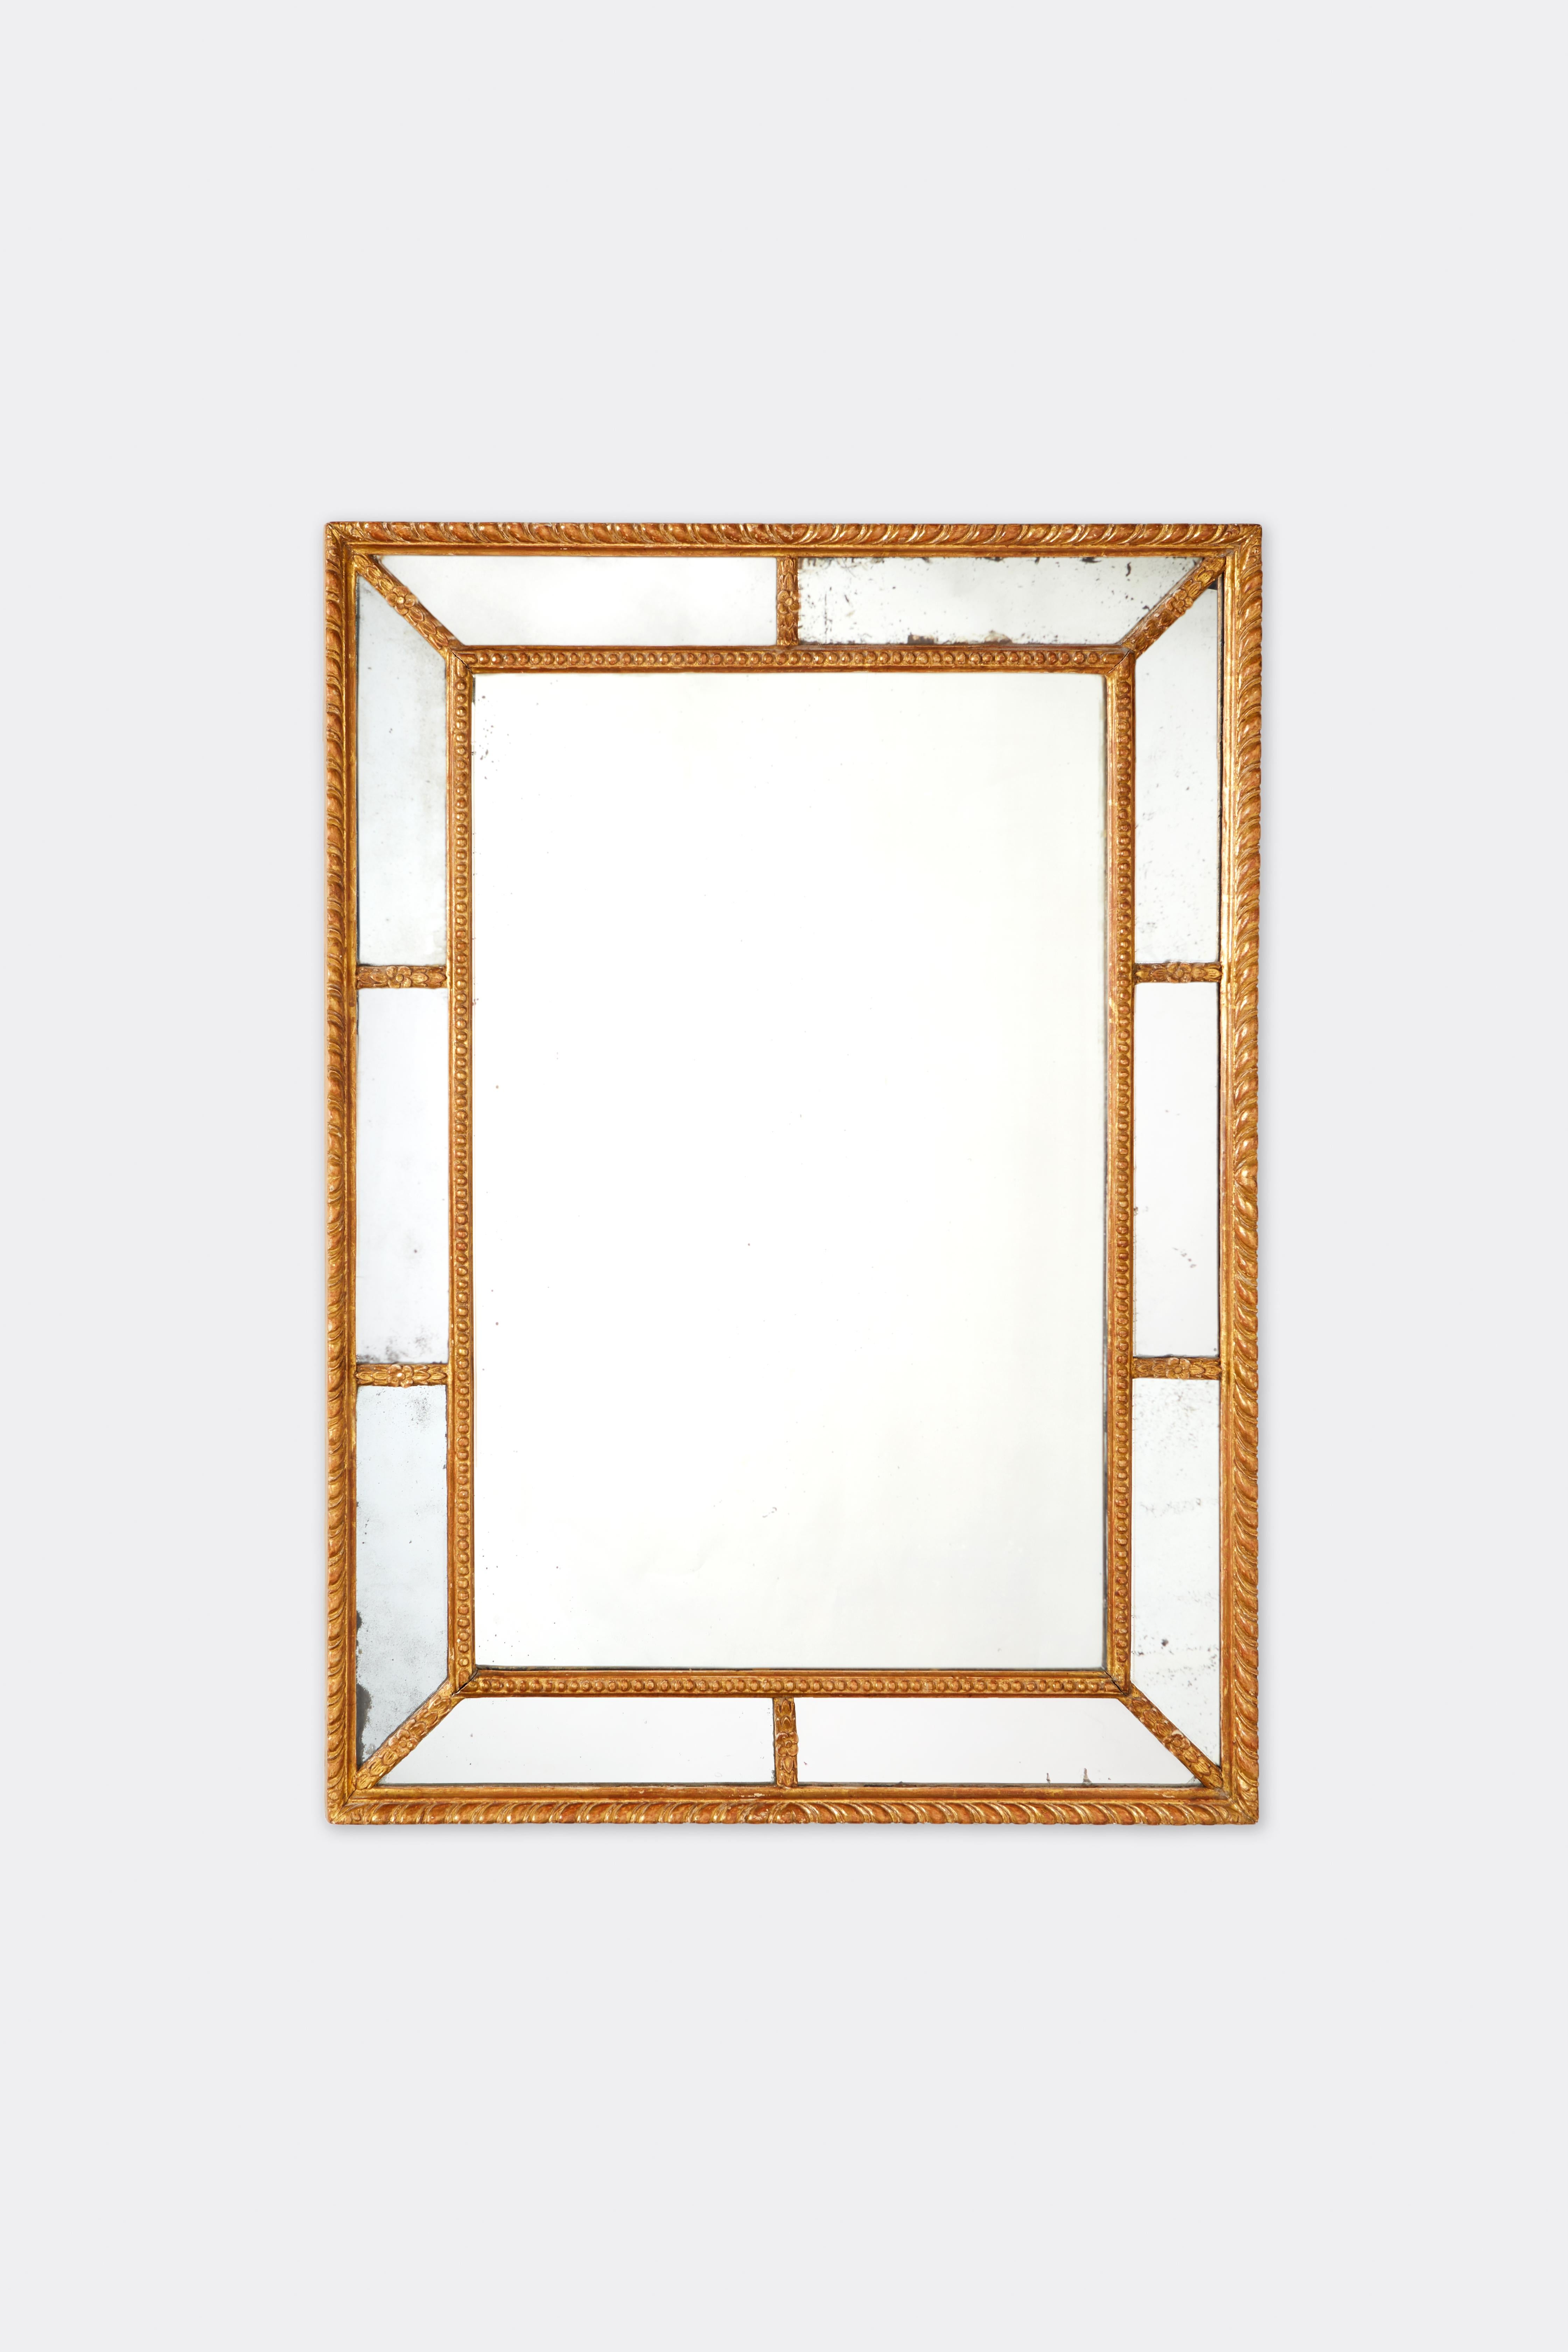 Miroir rectangulaire géorgien du XVIIIe siècle, avec des sections en miroir dans le cadre, et des détails en bois doré sculpté, y compris des granulations, des rosettes et des motifs torsadés.